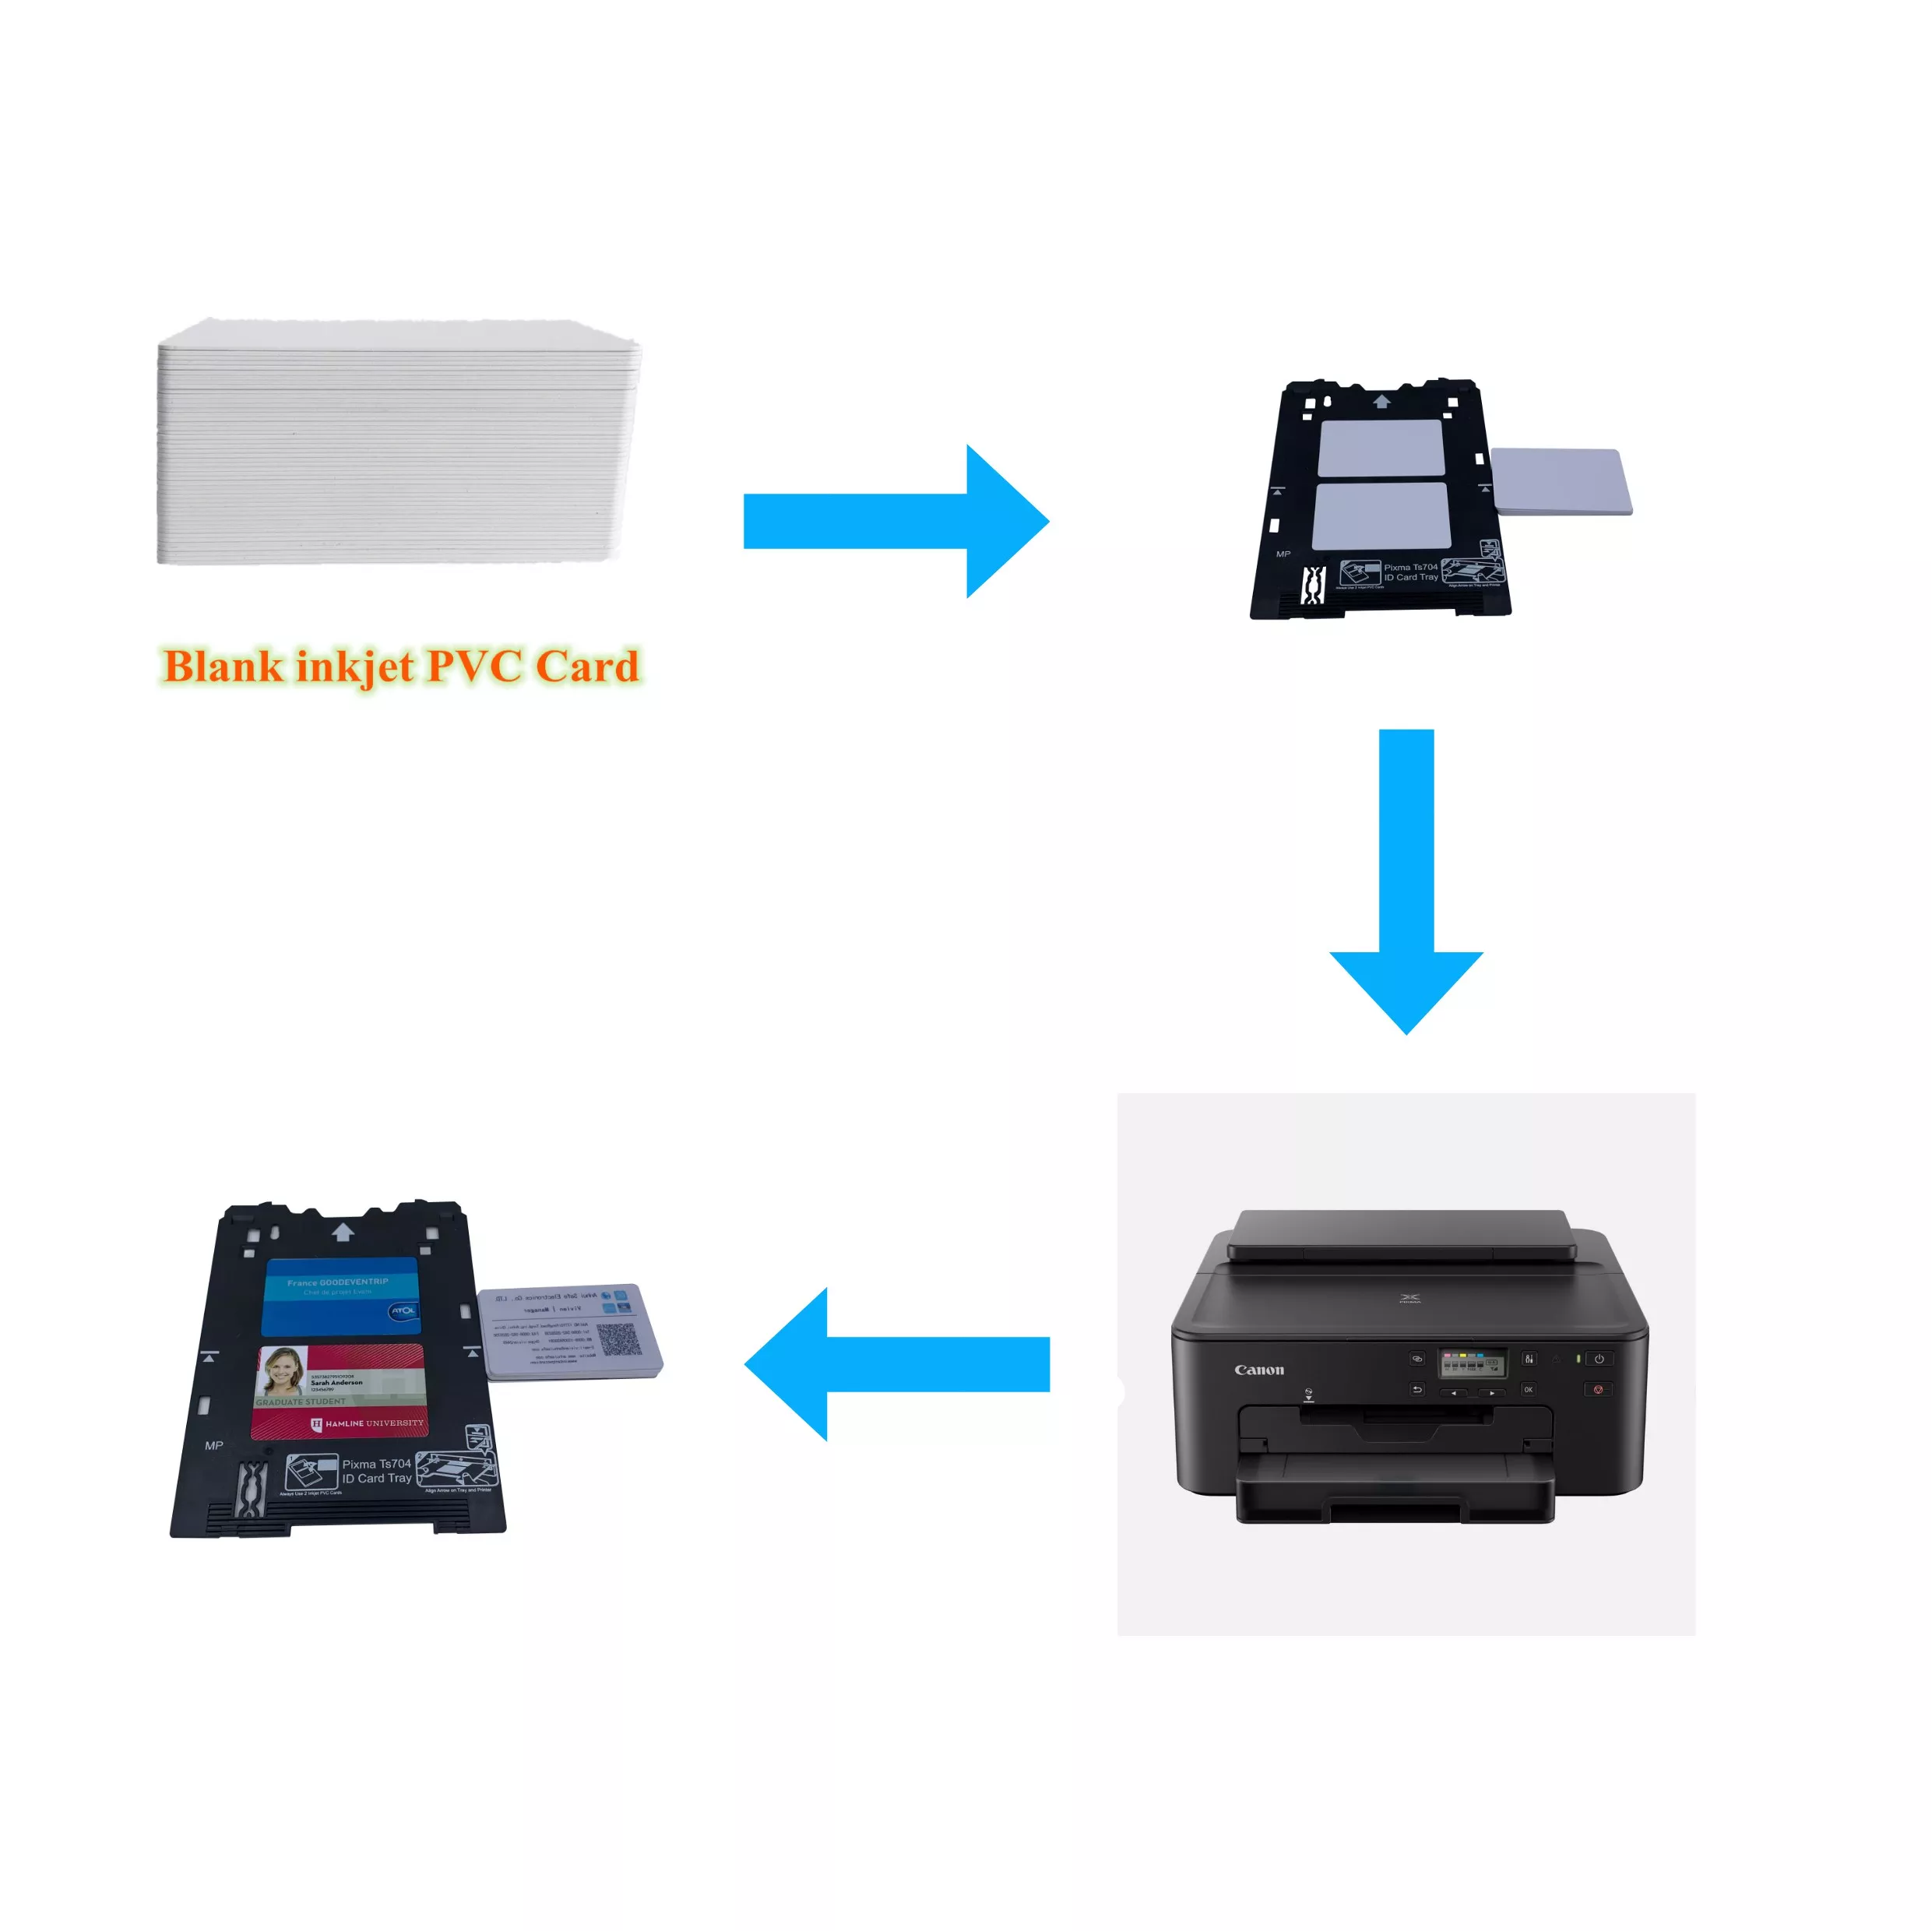 Canon Pixma Ts704 Wireless Photo, CD, ID Card & A4 Paper Printer - Black